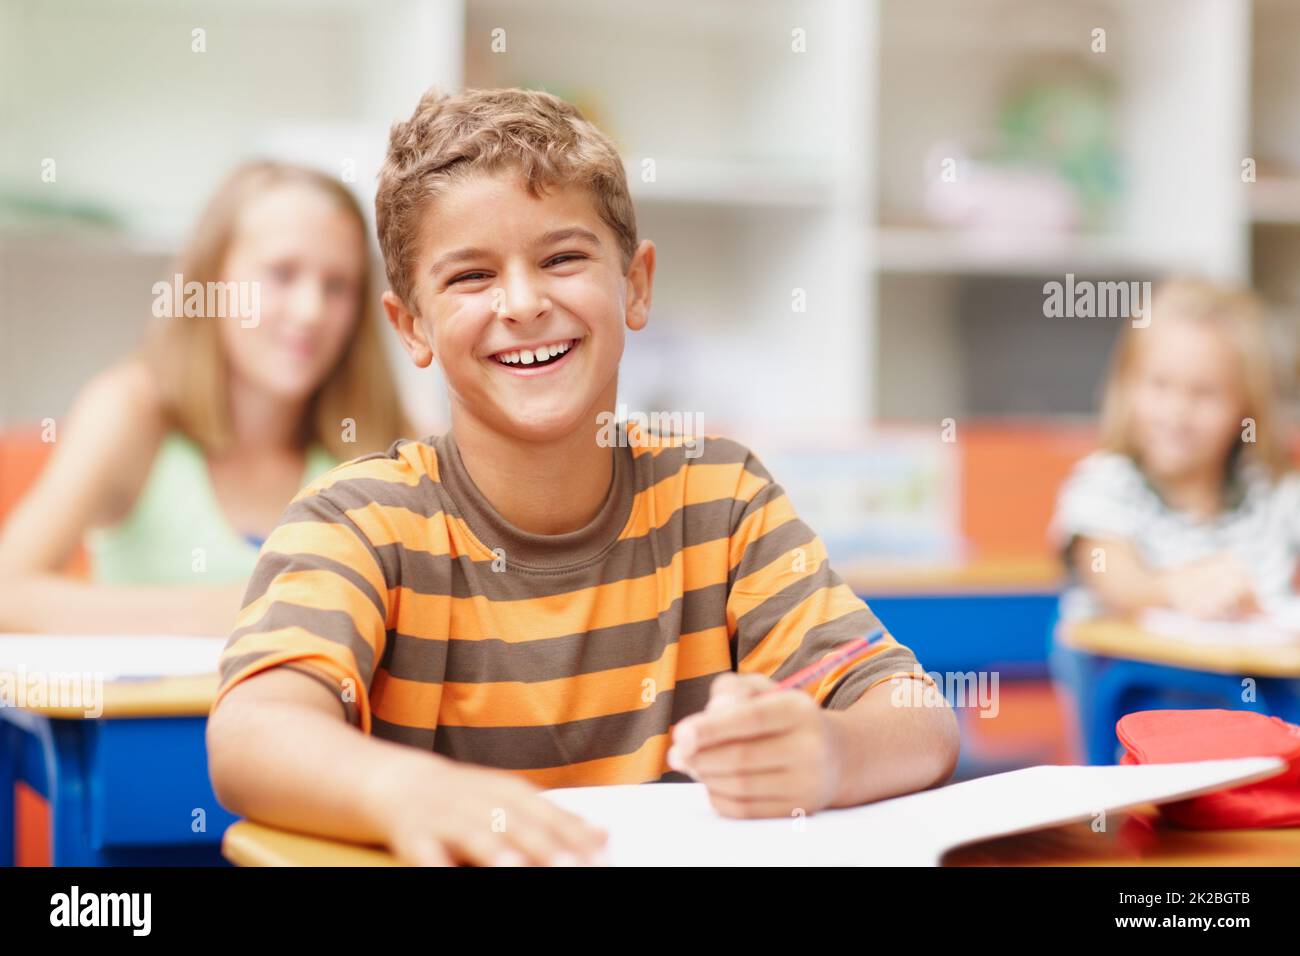 Disfrutar de un momento ligero en clase. Dulce chico sentado en su escritorio en clase riendo felizmente. Foto de stock